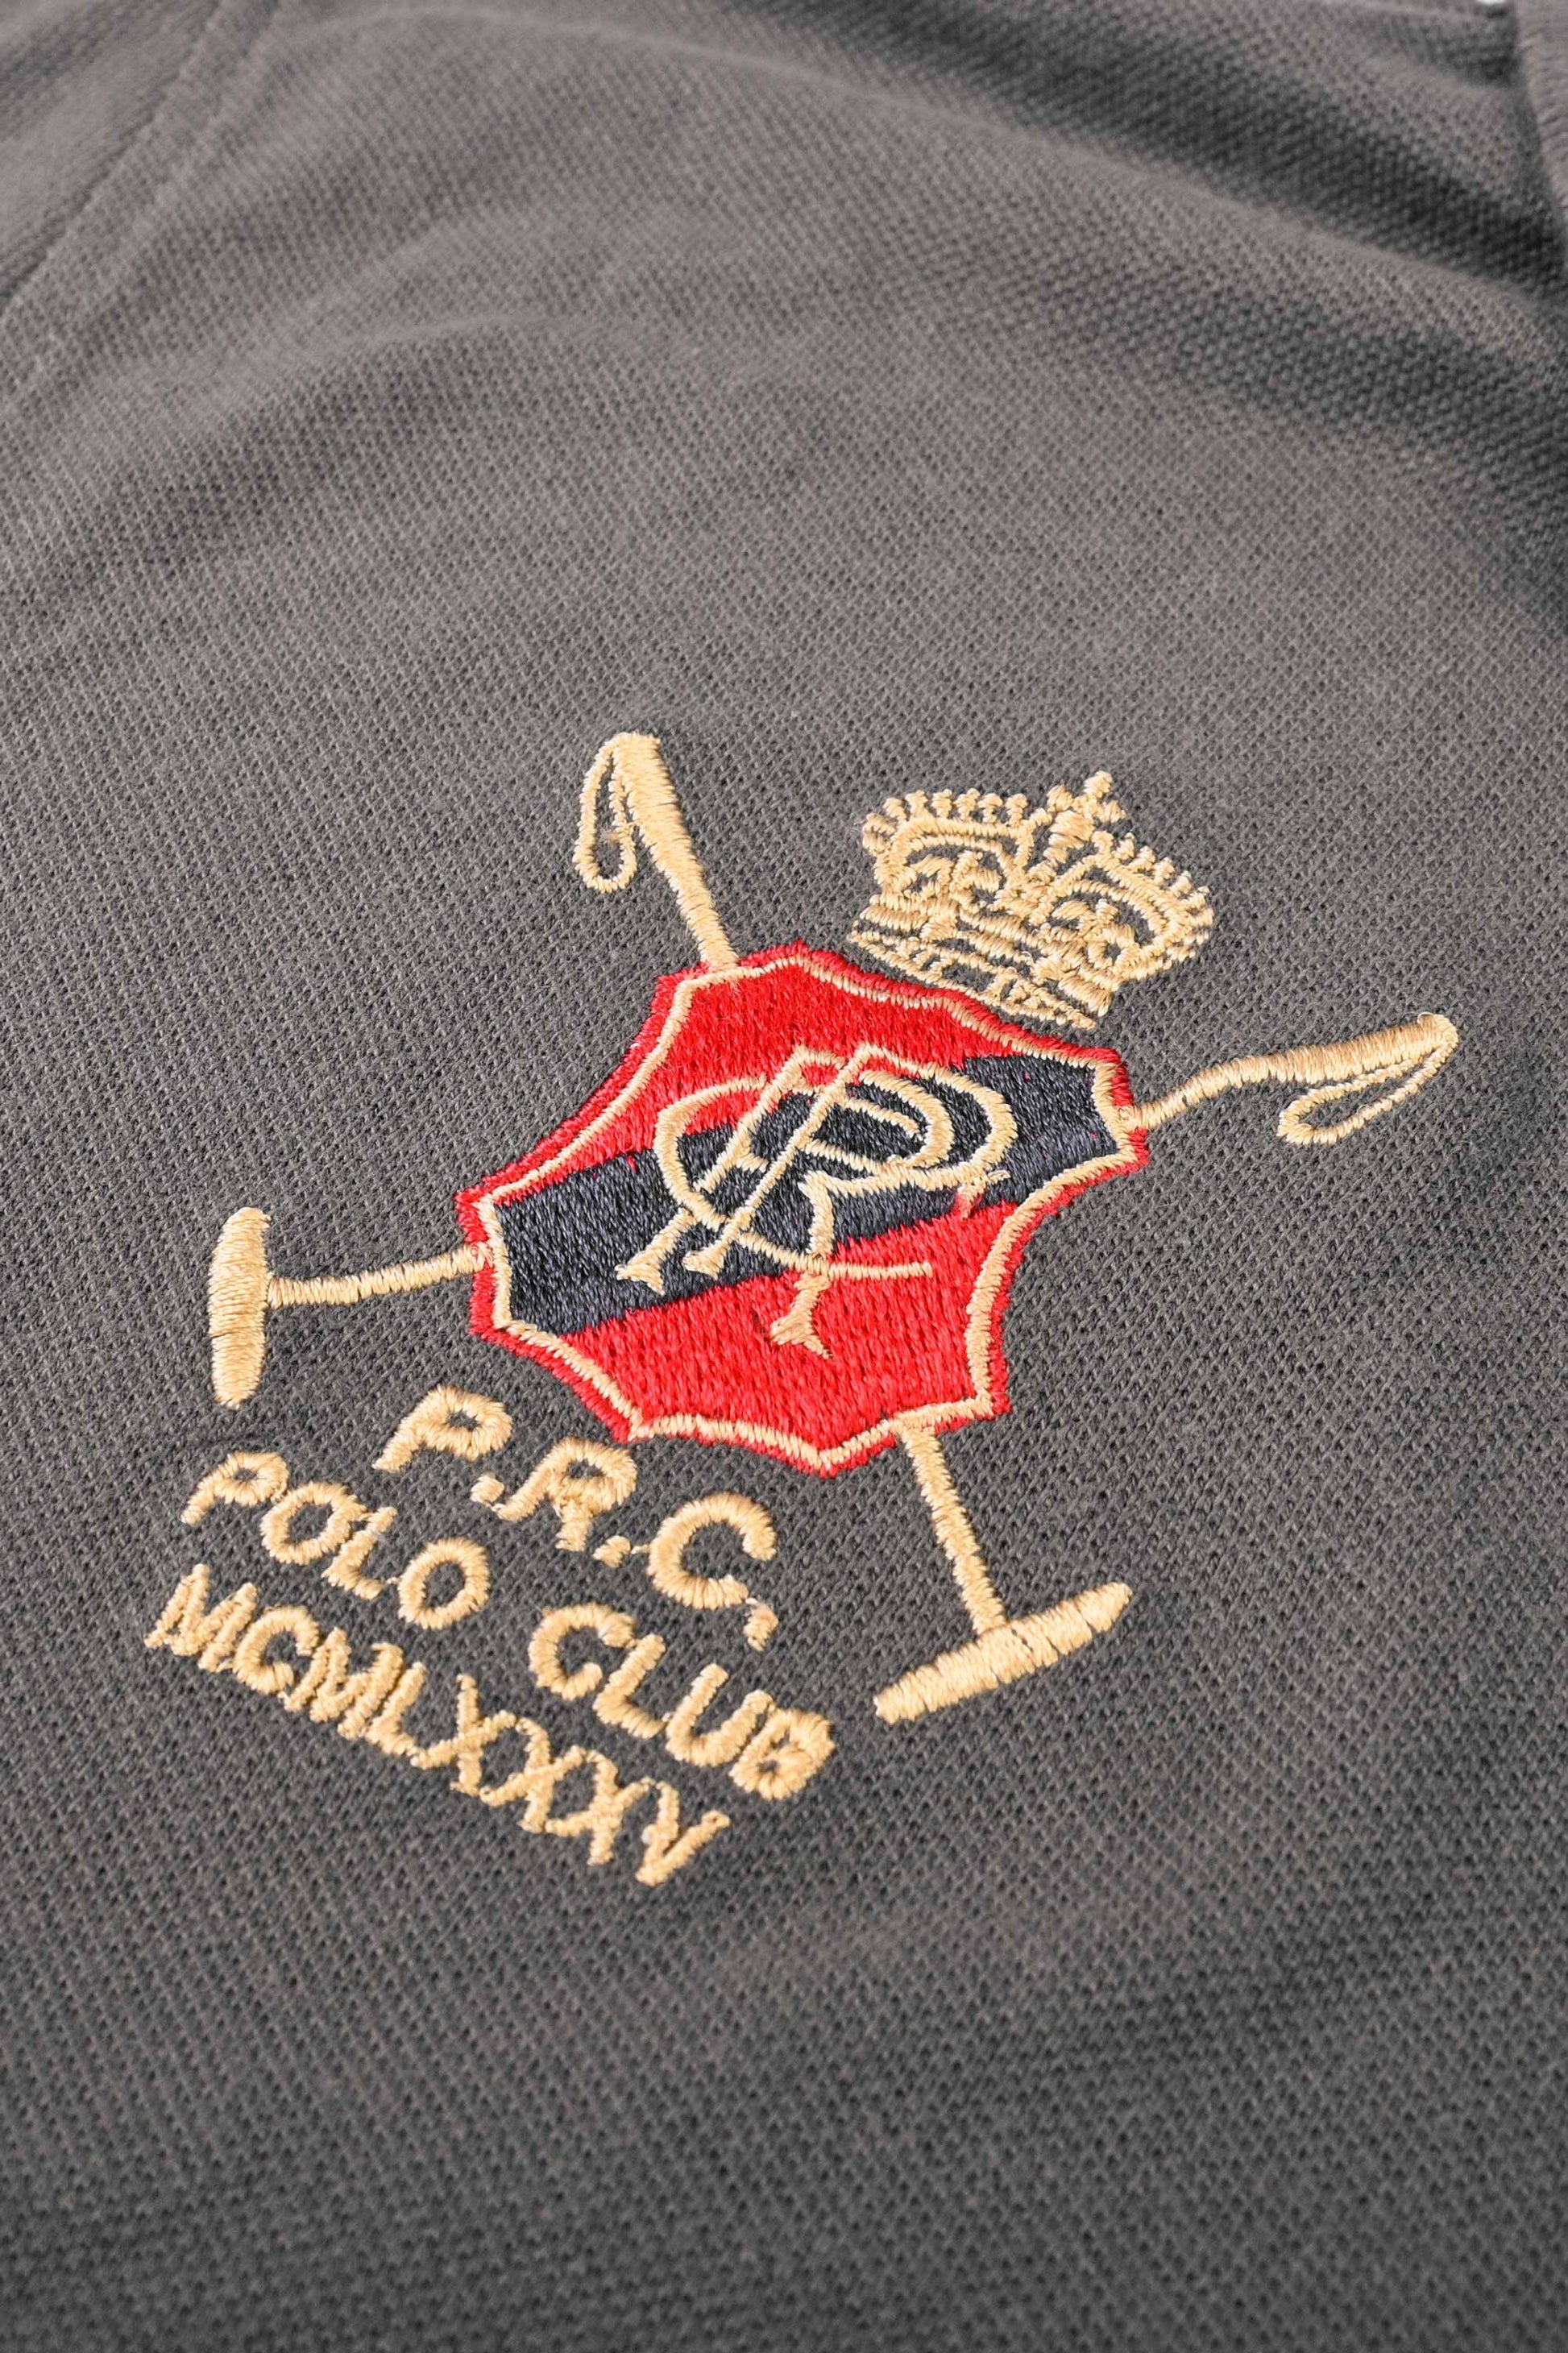 Polo Republica Men's Horse Rider & PR Crest Embroidered Short Sleeve Polo Shirt Men's Polo Shirt Polo Republica 